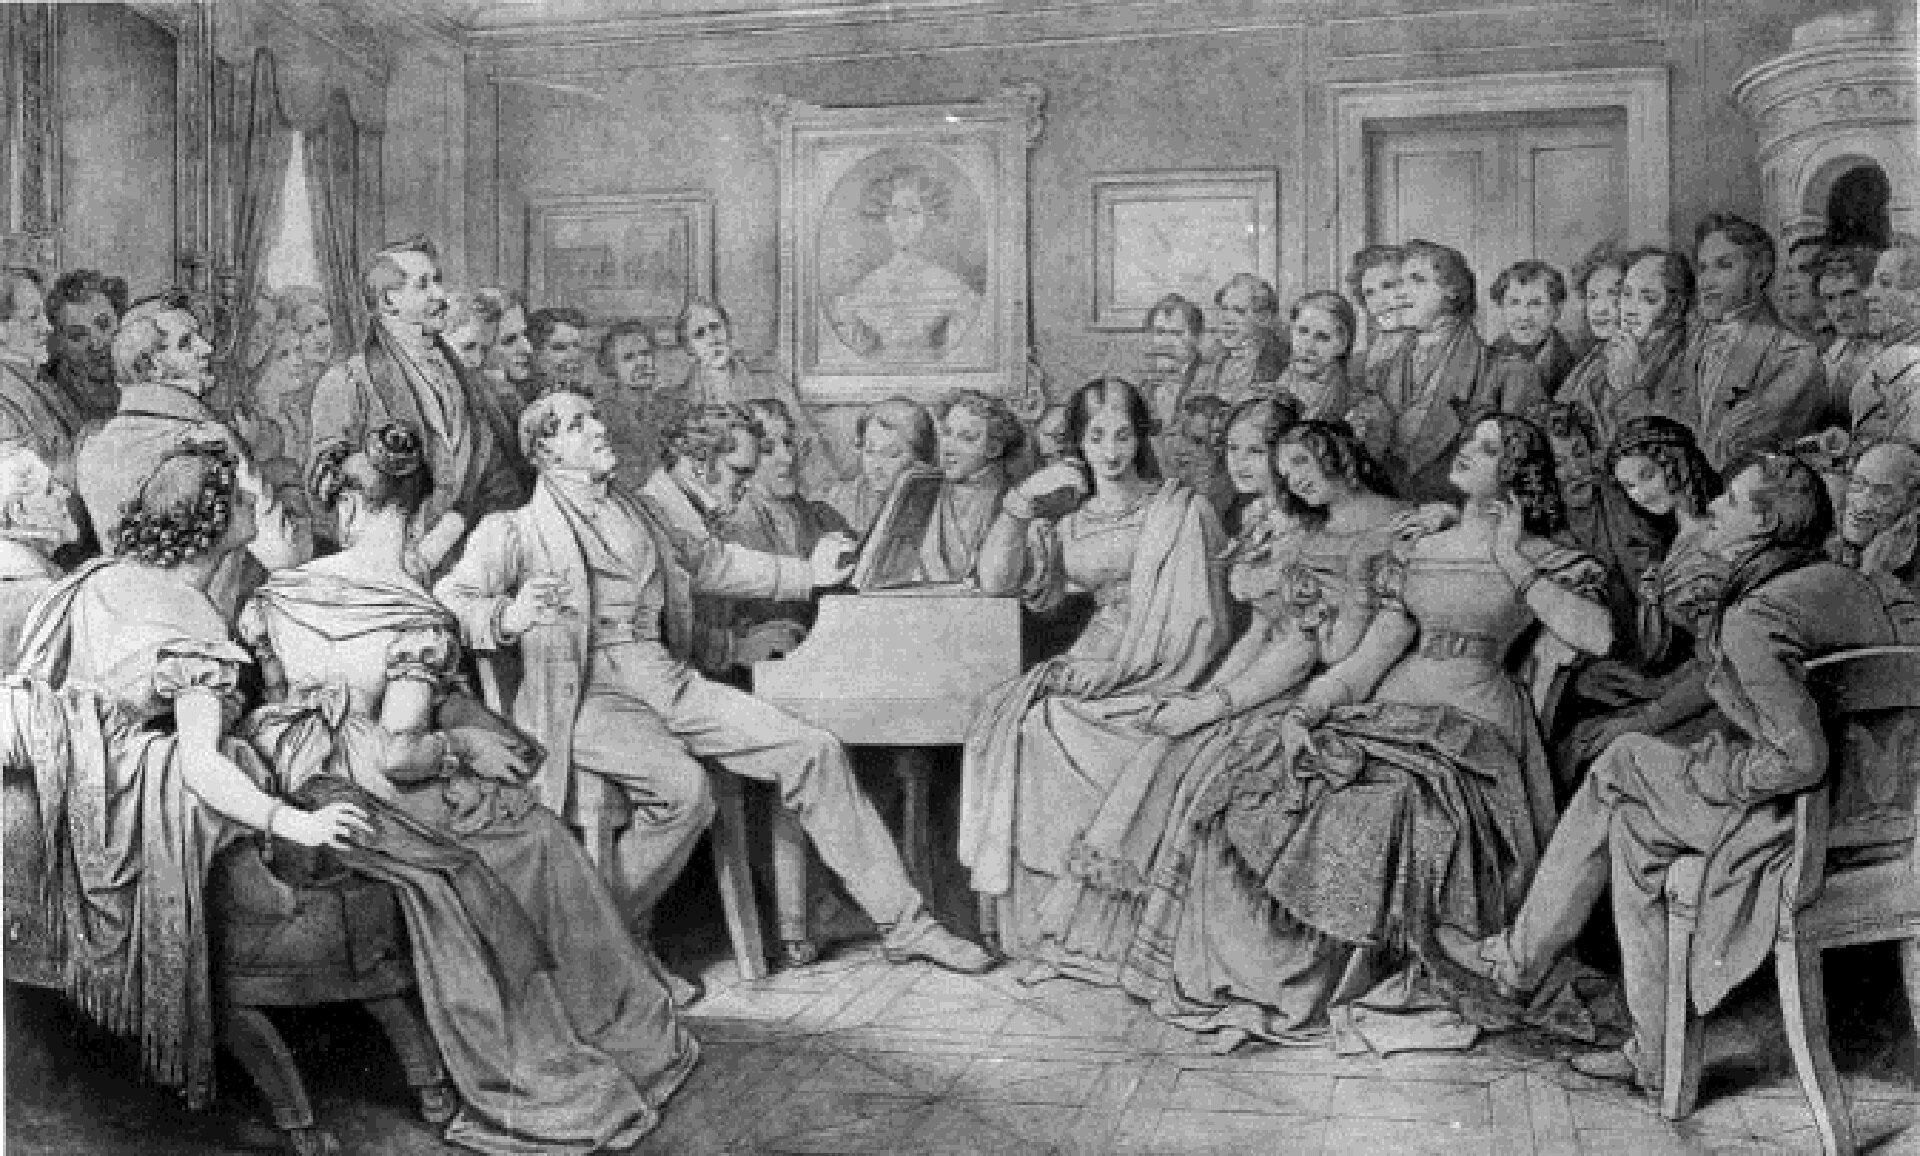 Ilustracja przedstawia Schubertiadę. W środku ilustracji widać grającego na fortepianie Schuberta, a obok niego znajdują się ludzie, słuchający jego gry. Część kobiet odpływa w ekstazie.